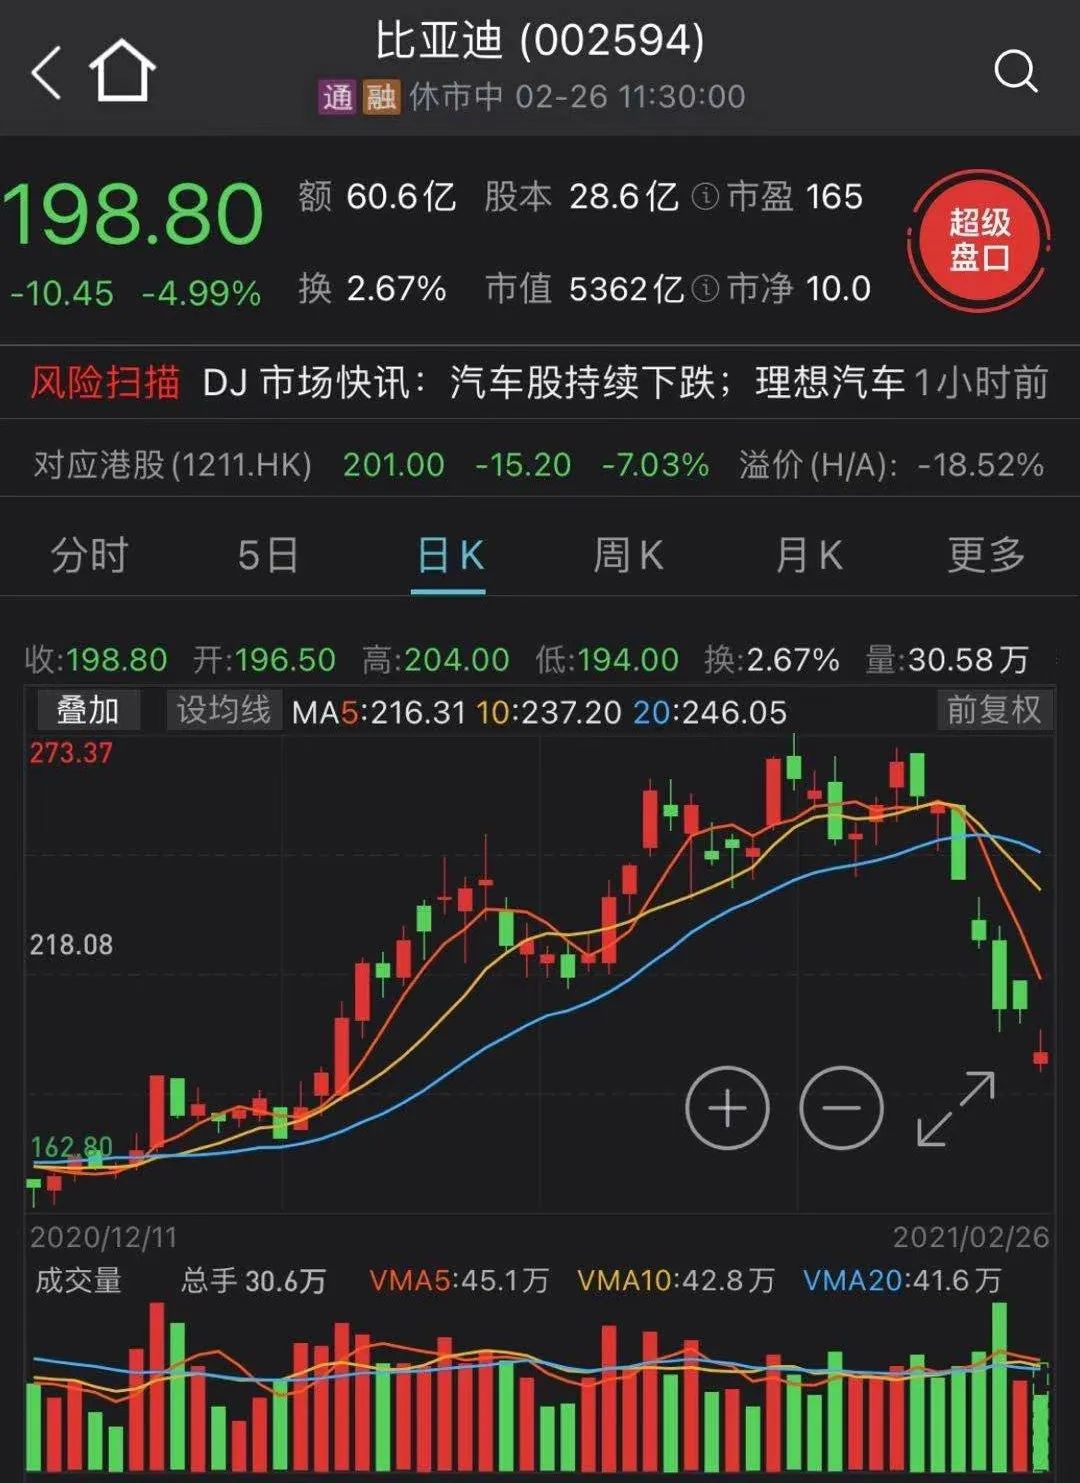 比亚迪下跌499%2月18日以来,该股跌幅超25%贵州茅台上午下跌227%